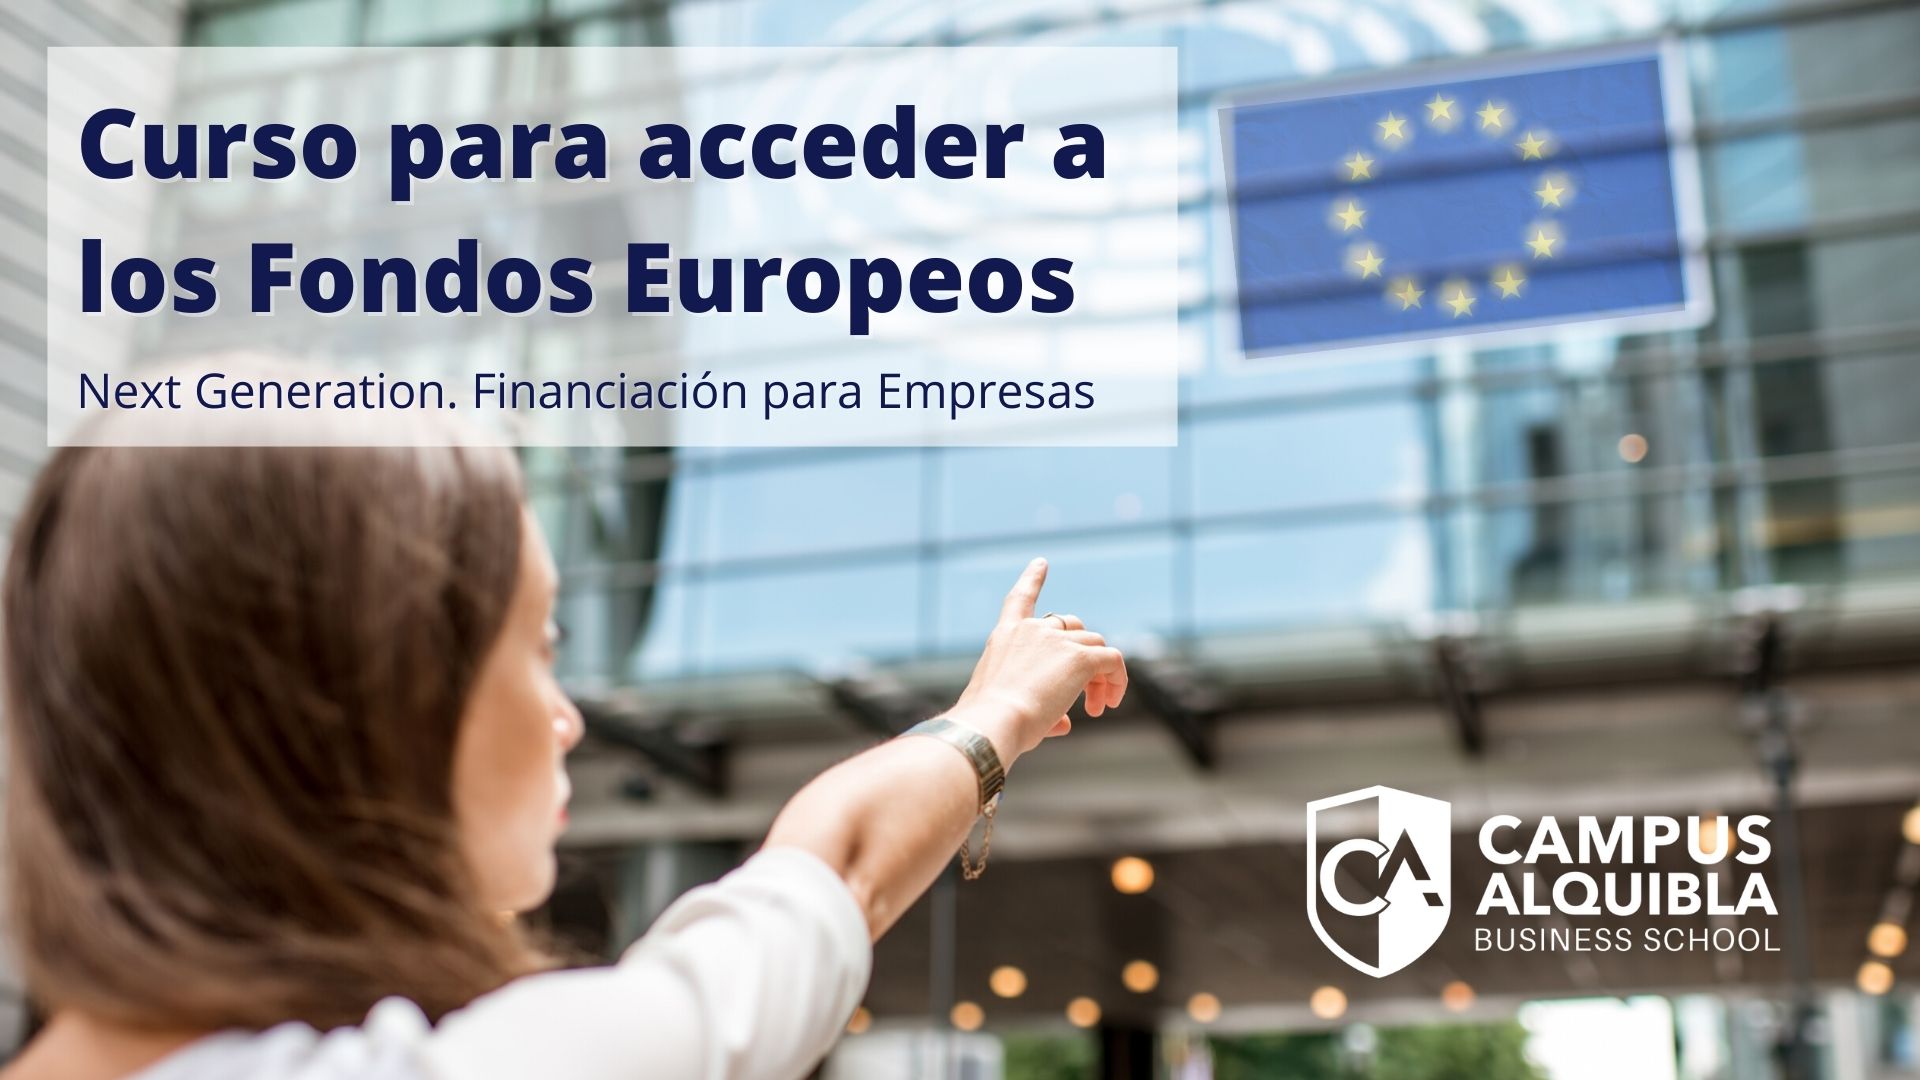 III Edición Curso Online para Acceder a los Fondos Europeos, Next Generation. Financiación para Empresas y Administraciones Públicas.